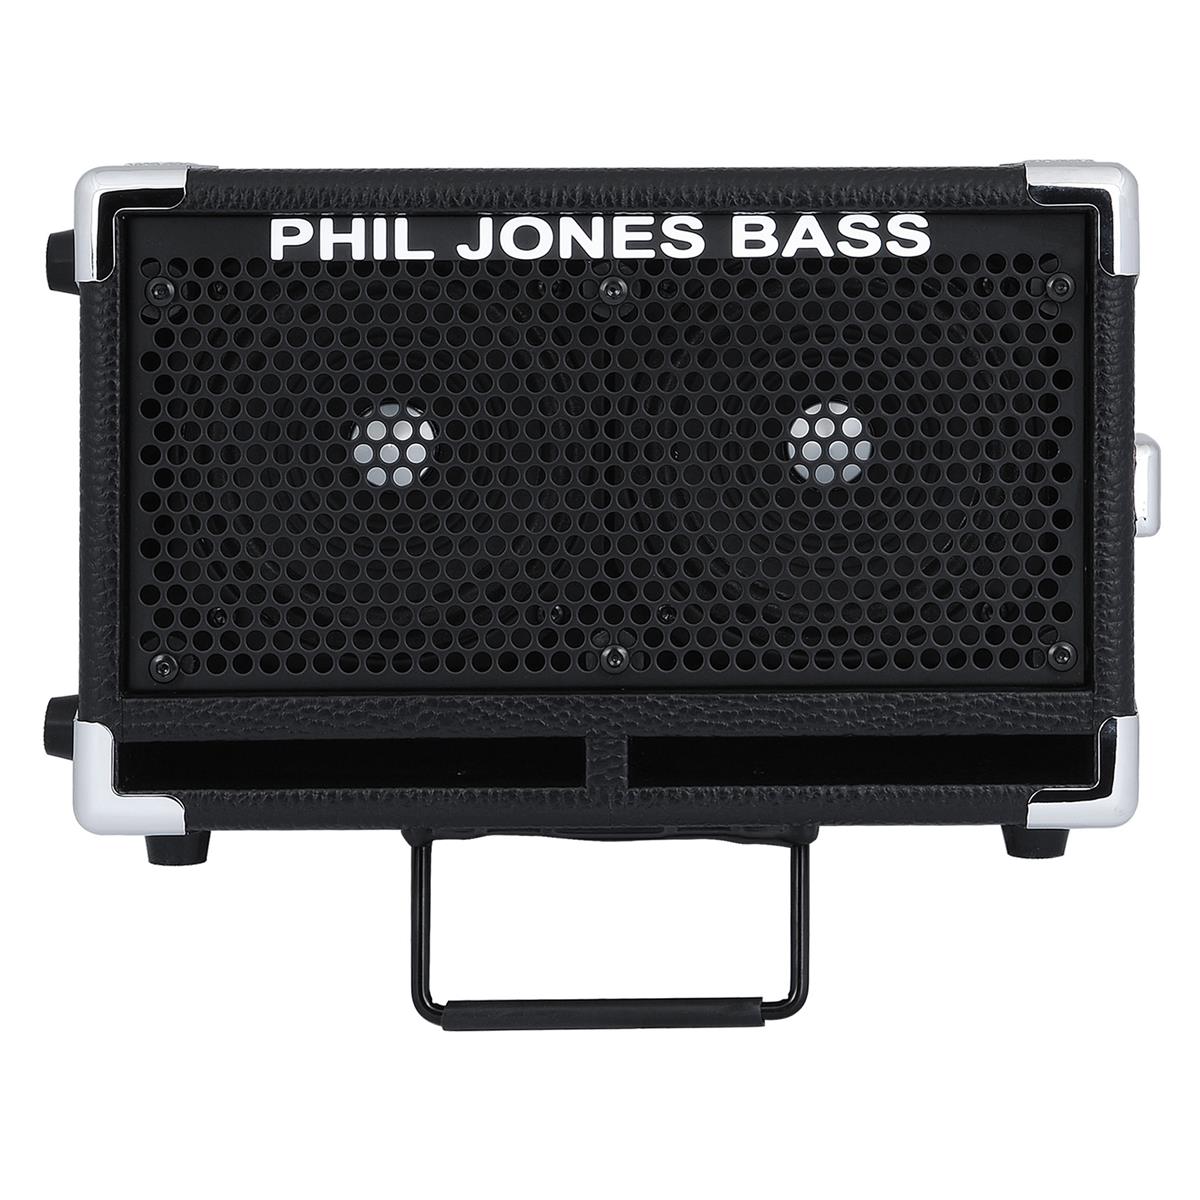 Image of Phil Jones Bass BG-110 Bass Cub II Bass Amplifier